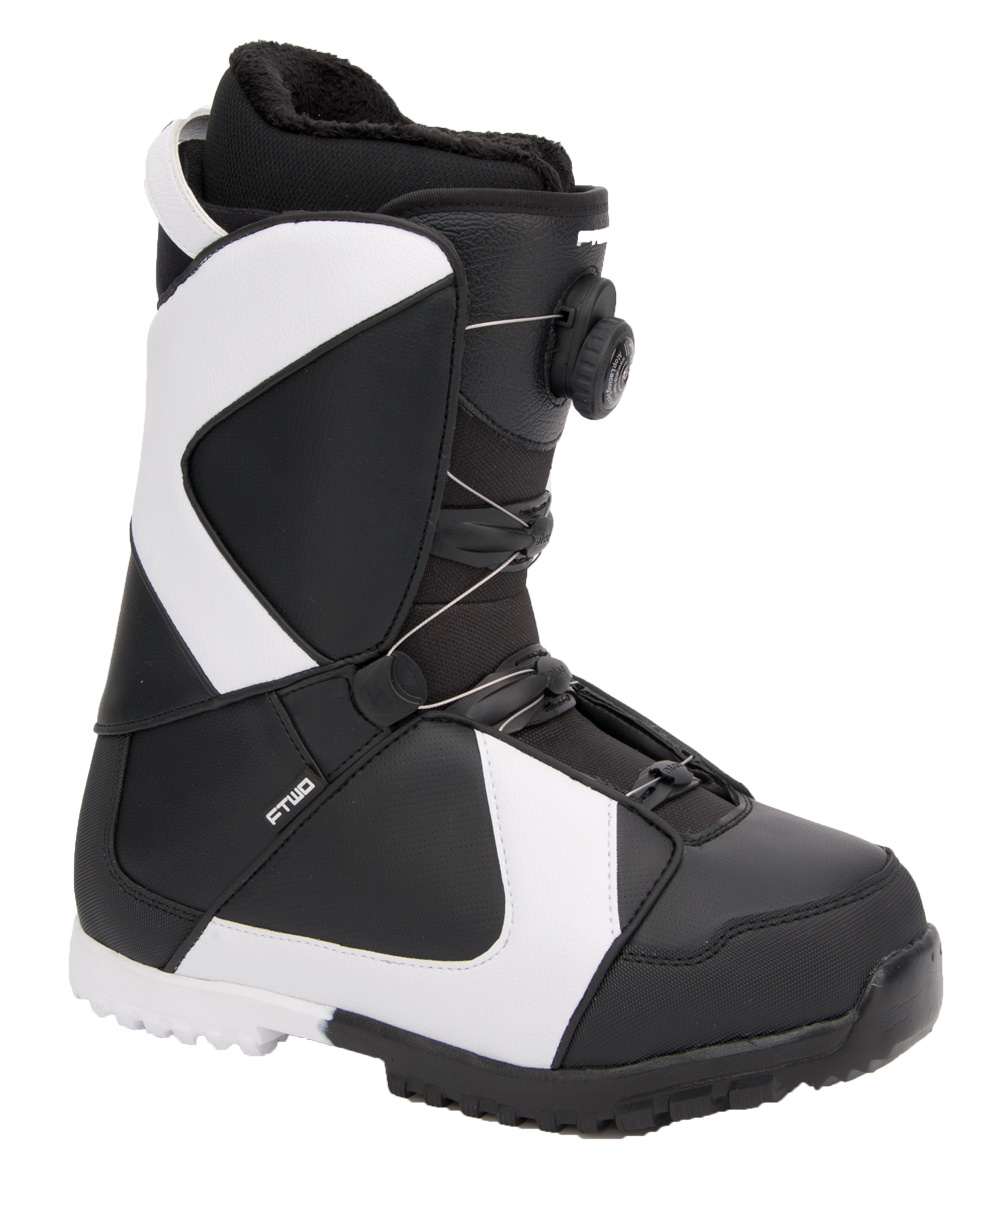 Ботинки сноубордические F2 Air размер 26,0 black/black фото 